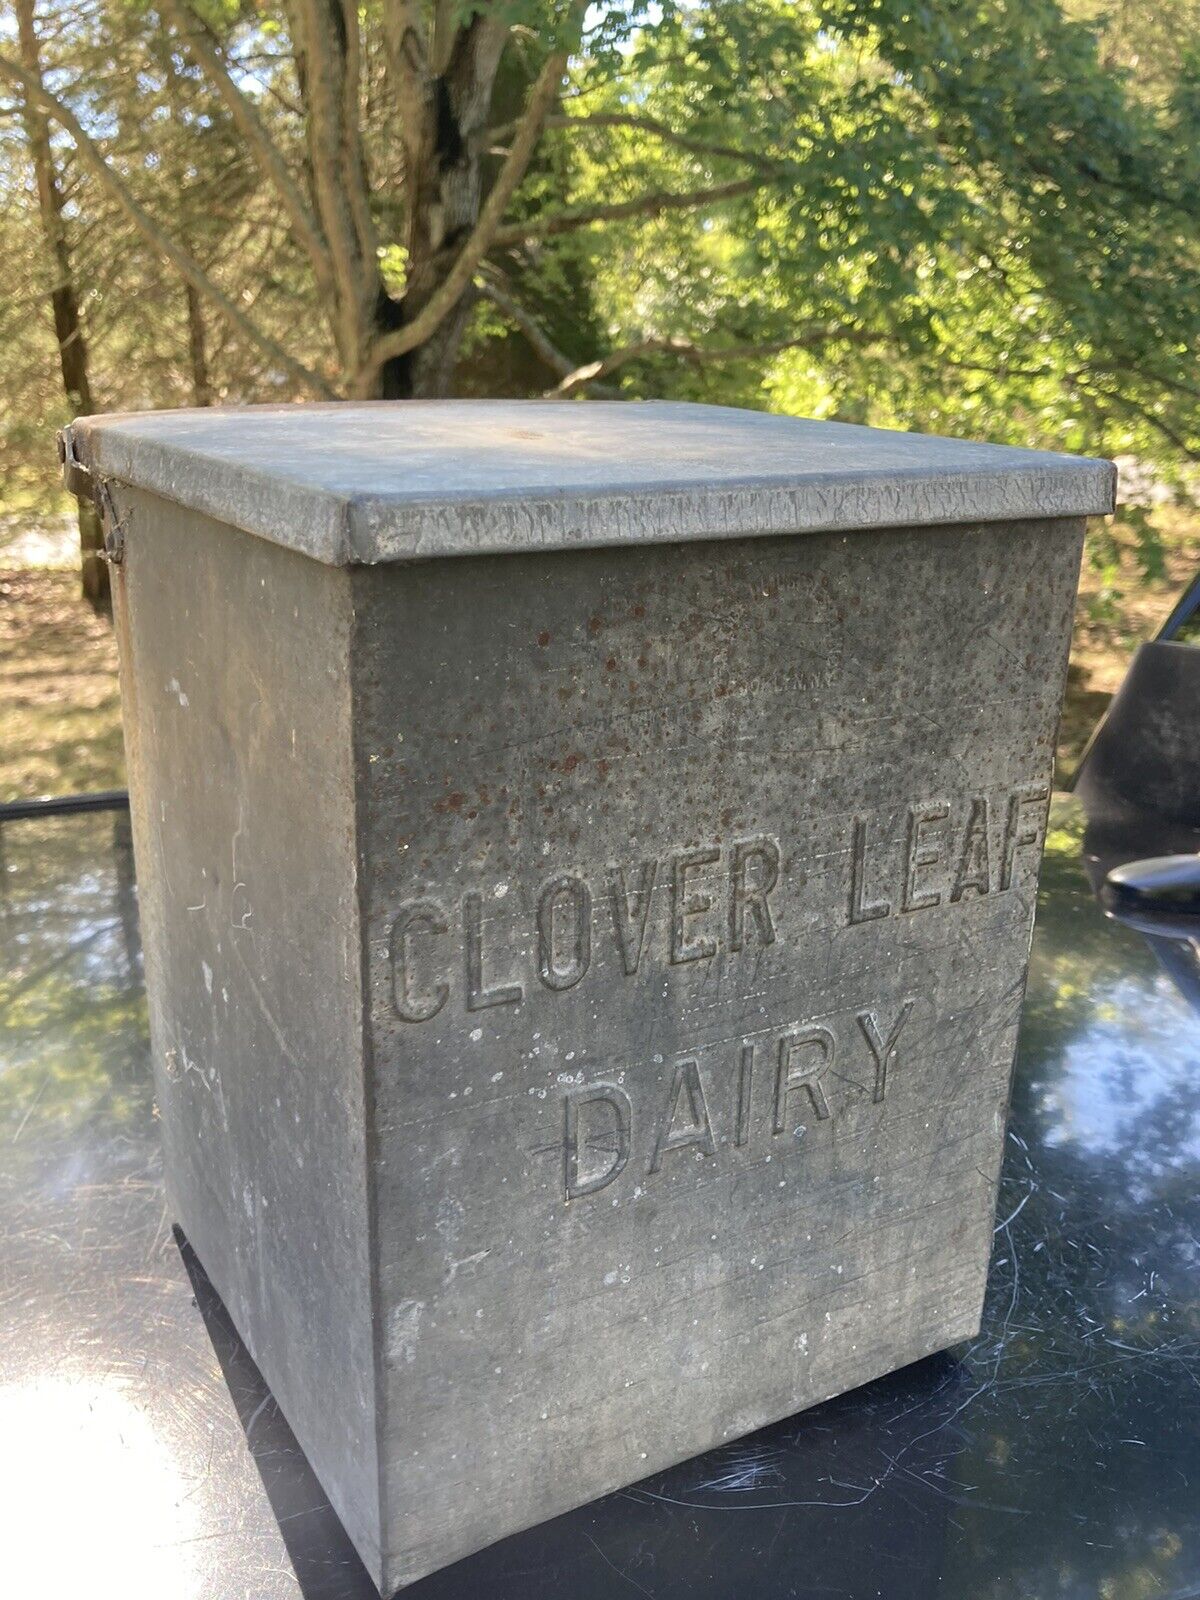 VINTAGE Porch Milk Dairy Box Galvanized Tin Clover Leaf Dairies 11x10x8”